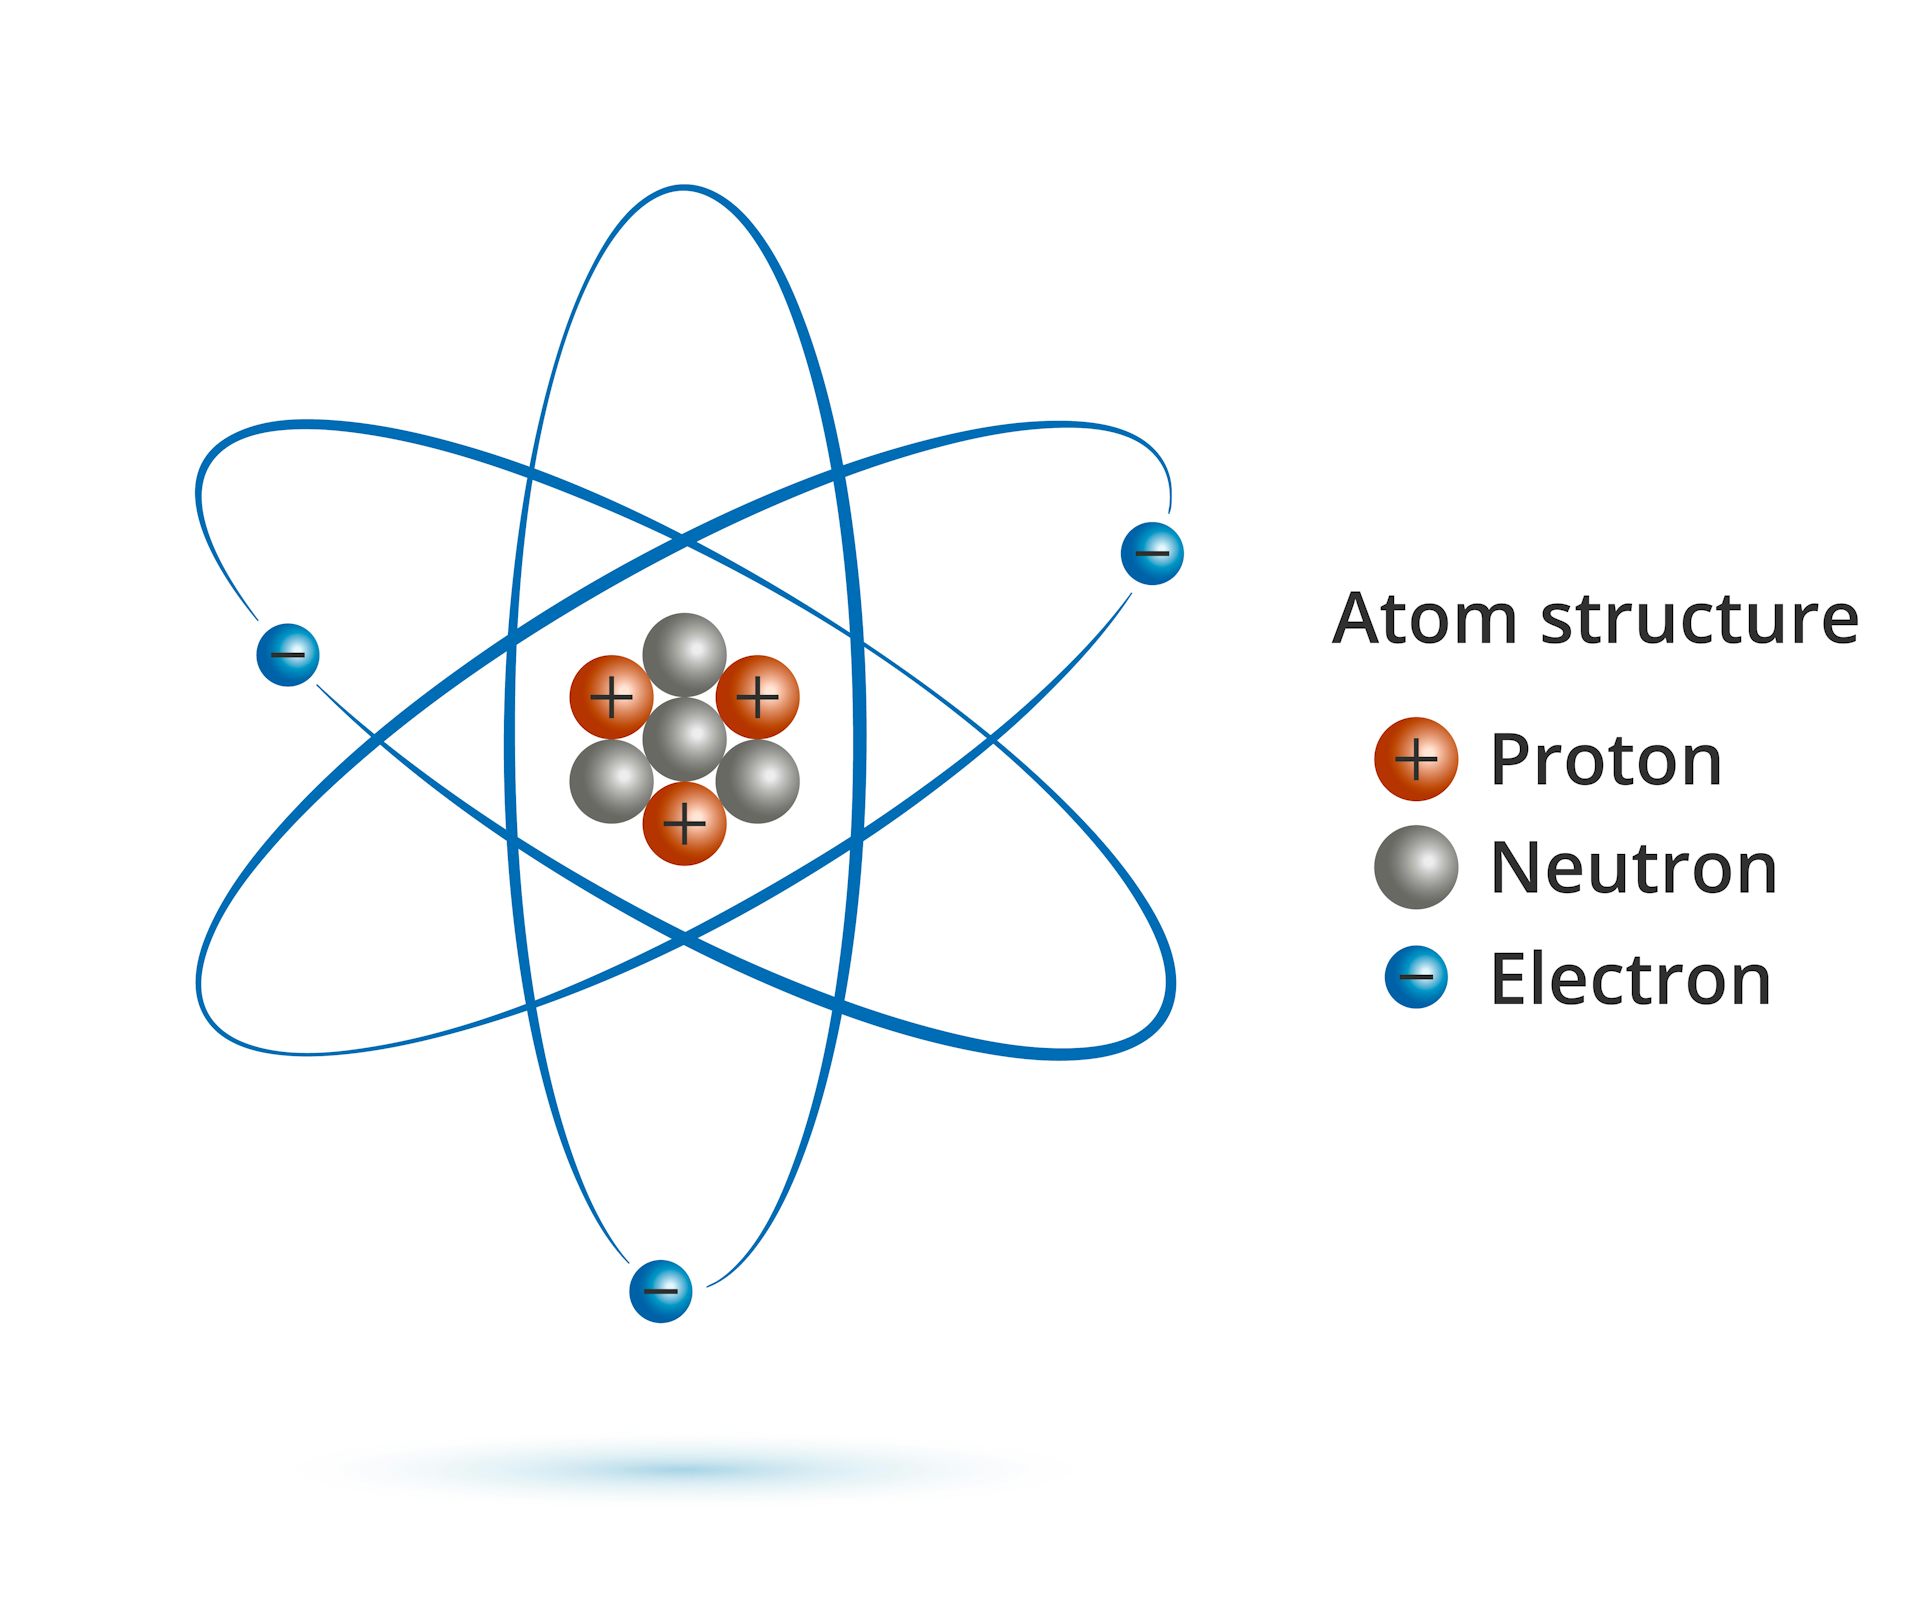 neutrino plus neutron equals proton plus election